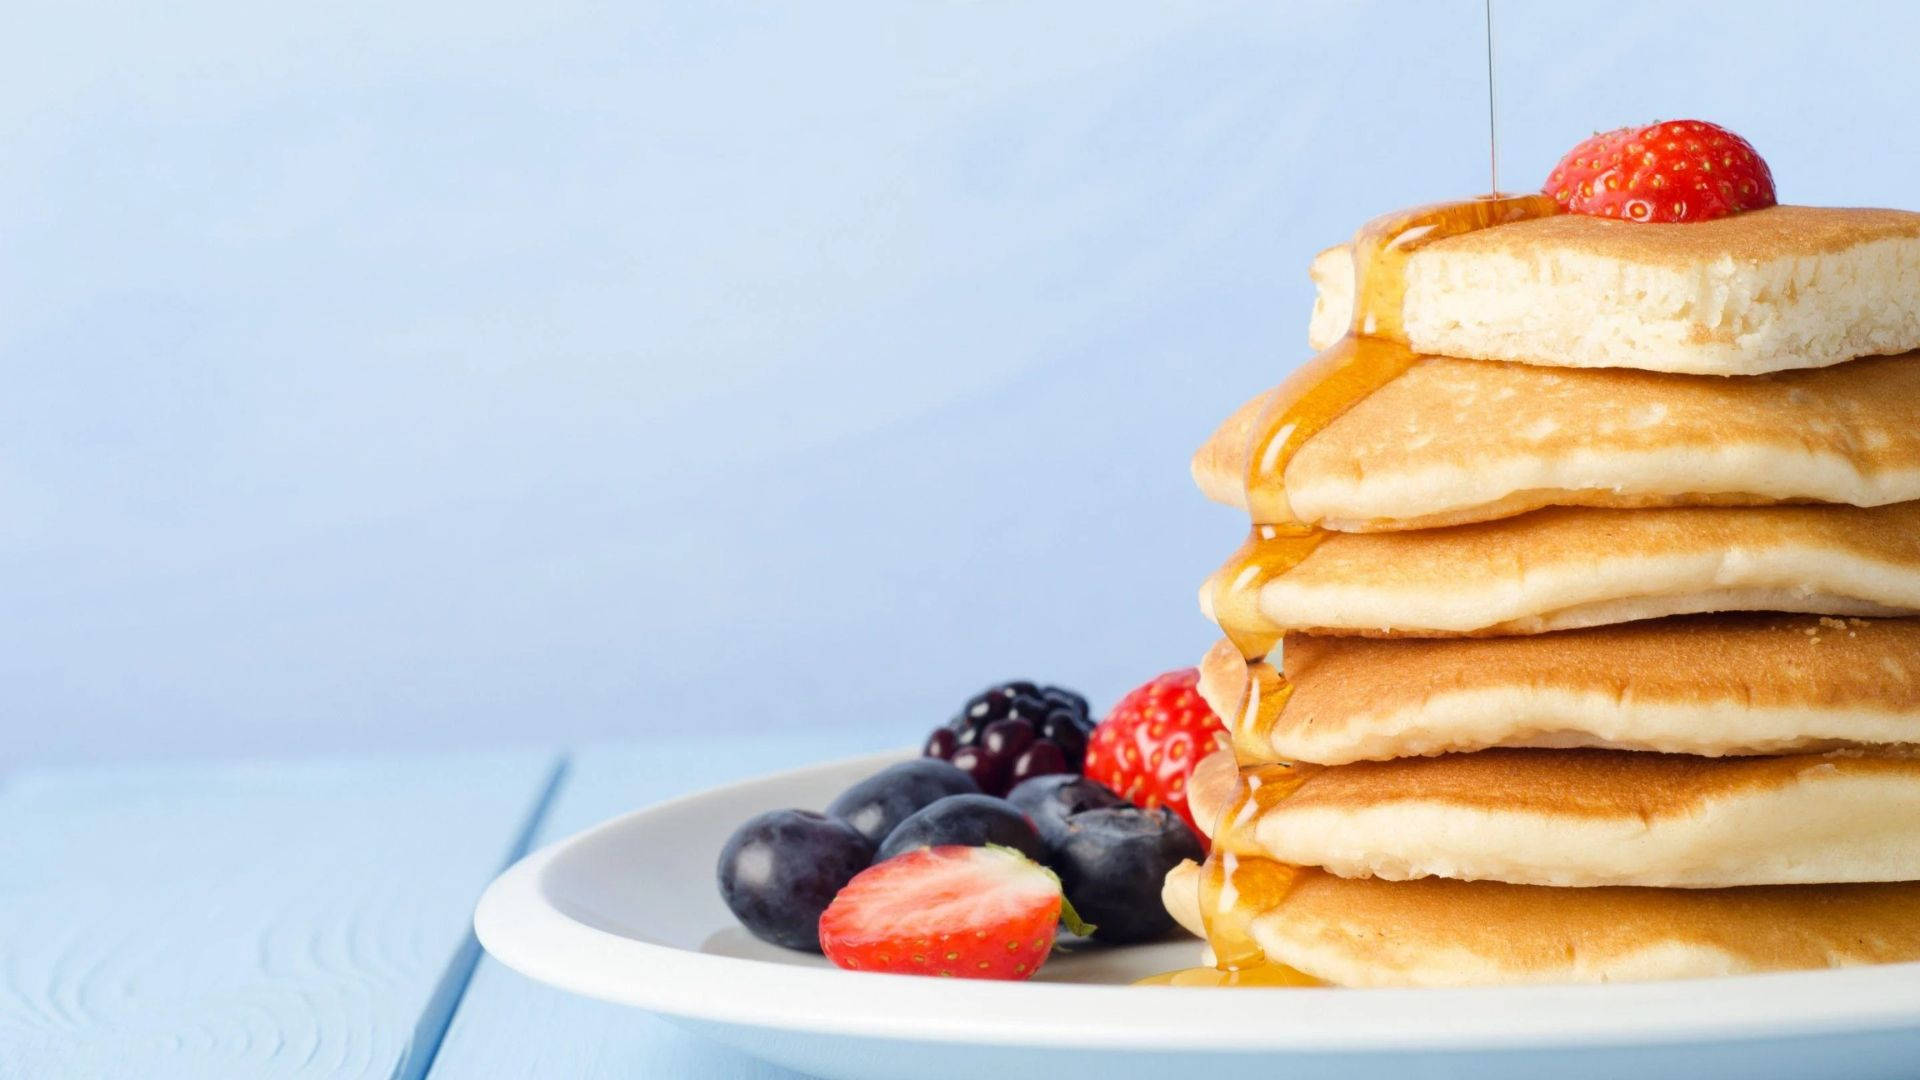 Top 999+ Pancakes Wallpaper Full HD, 4K✅Free to Use